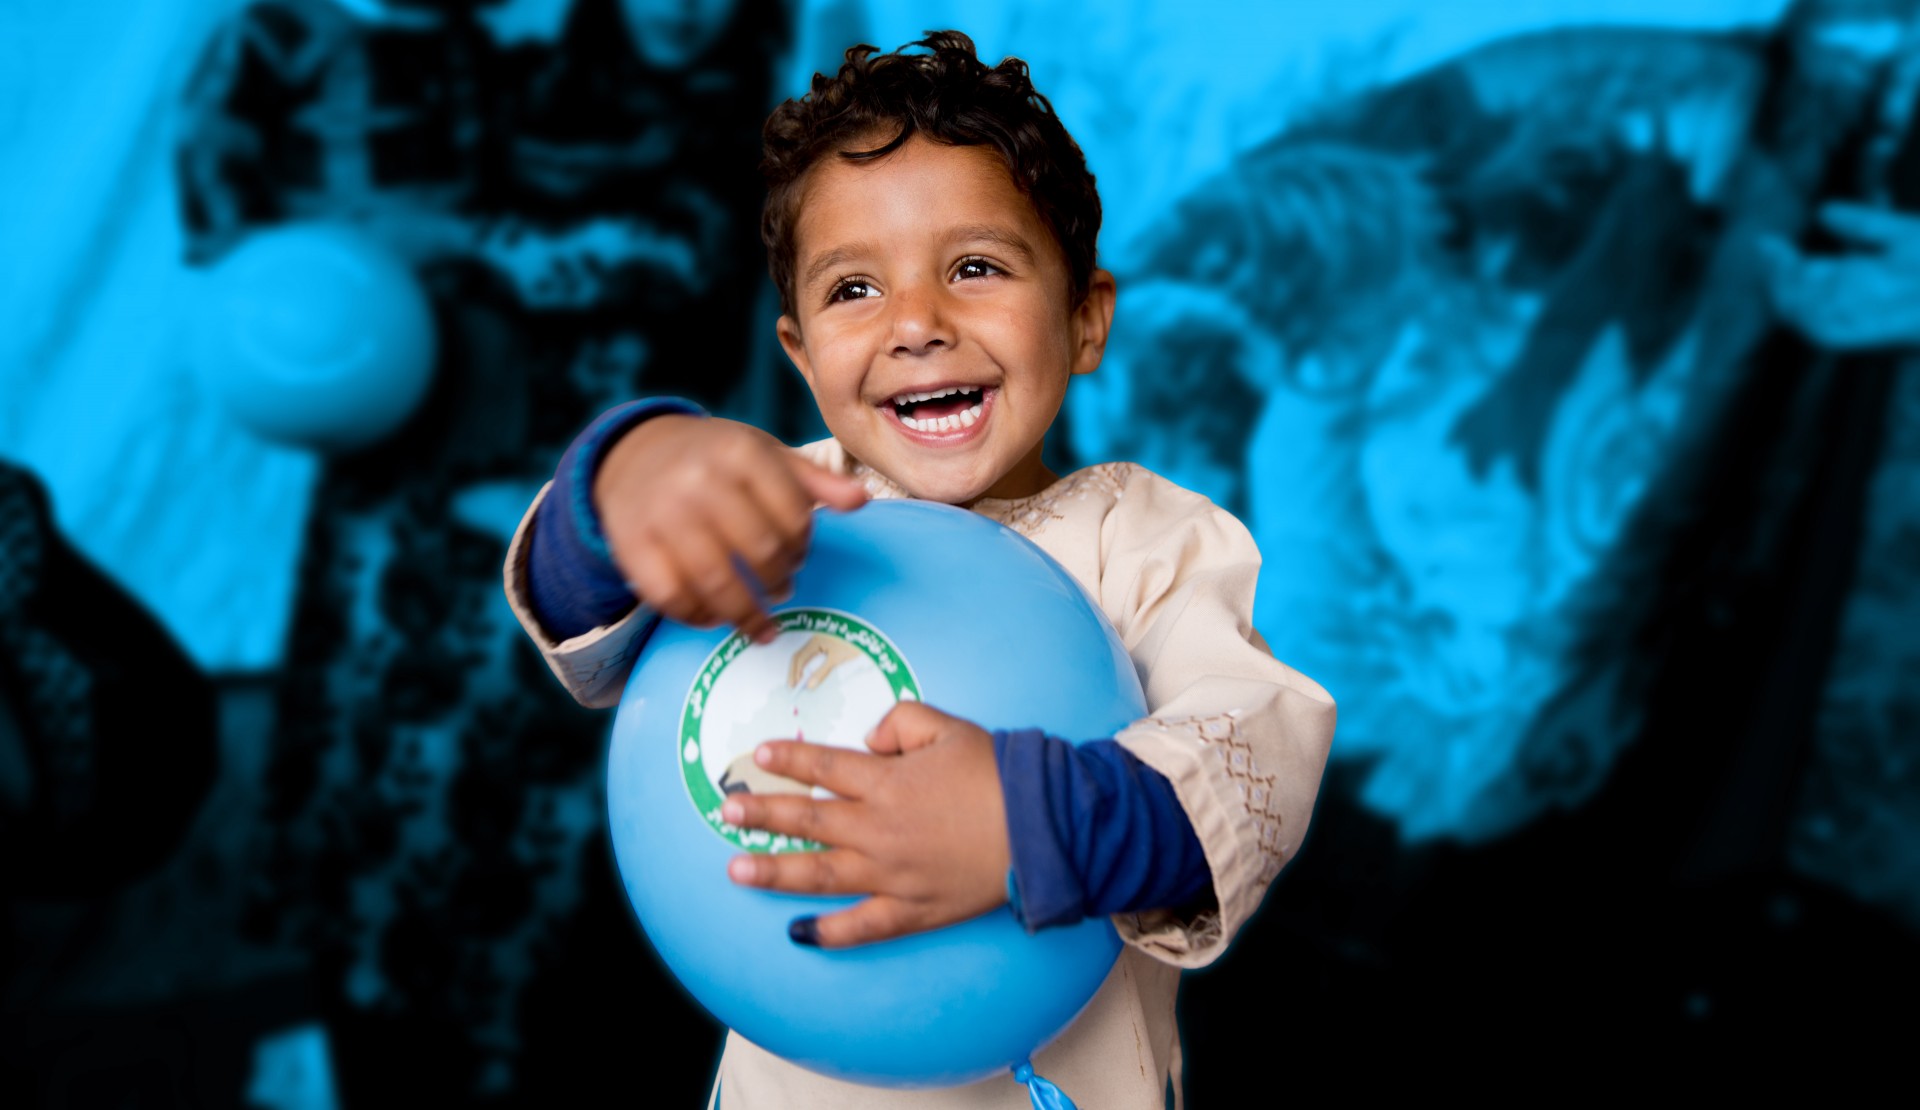 UNICEF | her çocuk için